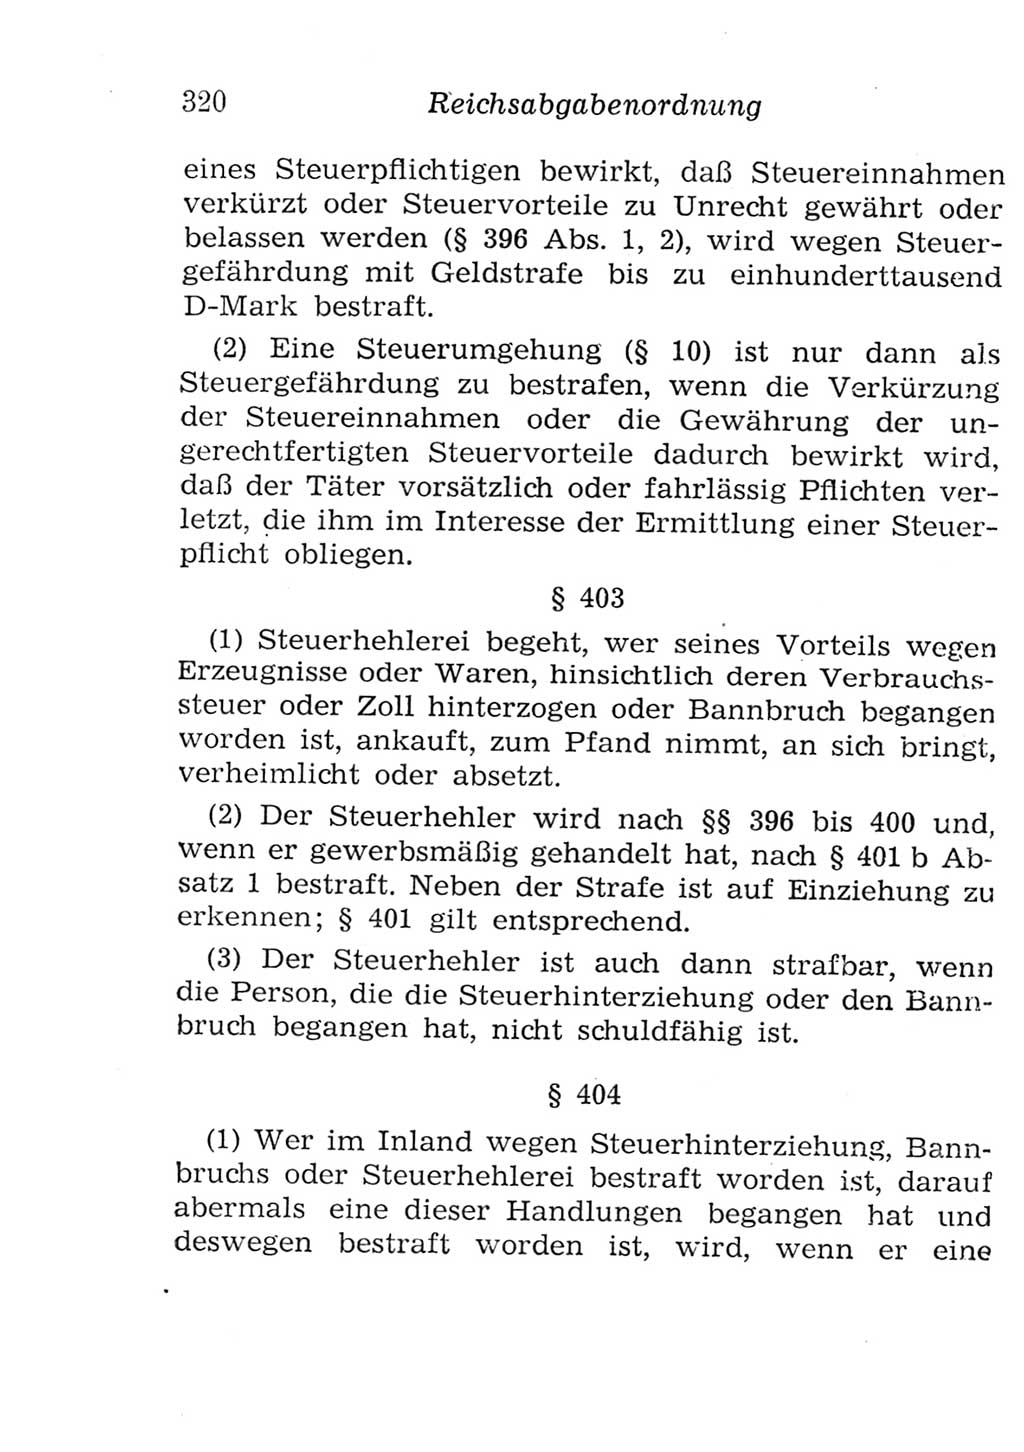 Strafgesetzbuch (StGB) und andere Strafgesetze [Deutsche Demokratische Republik (DDR)] 1957, Seite 320 (StGB Strafges. DDR 1957, S. 320)